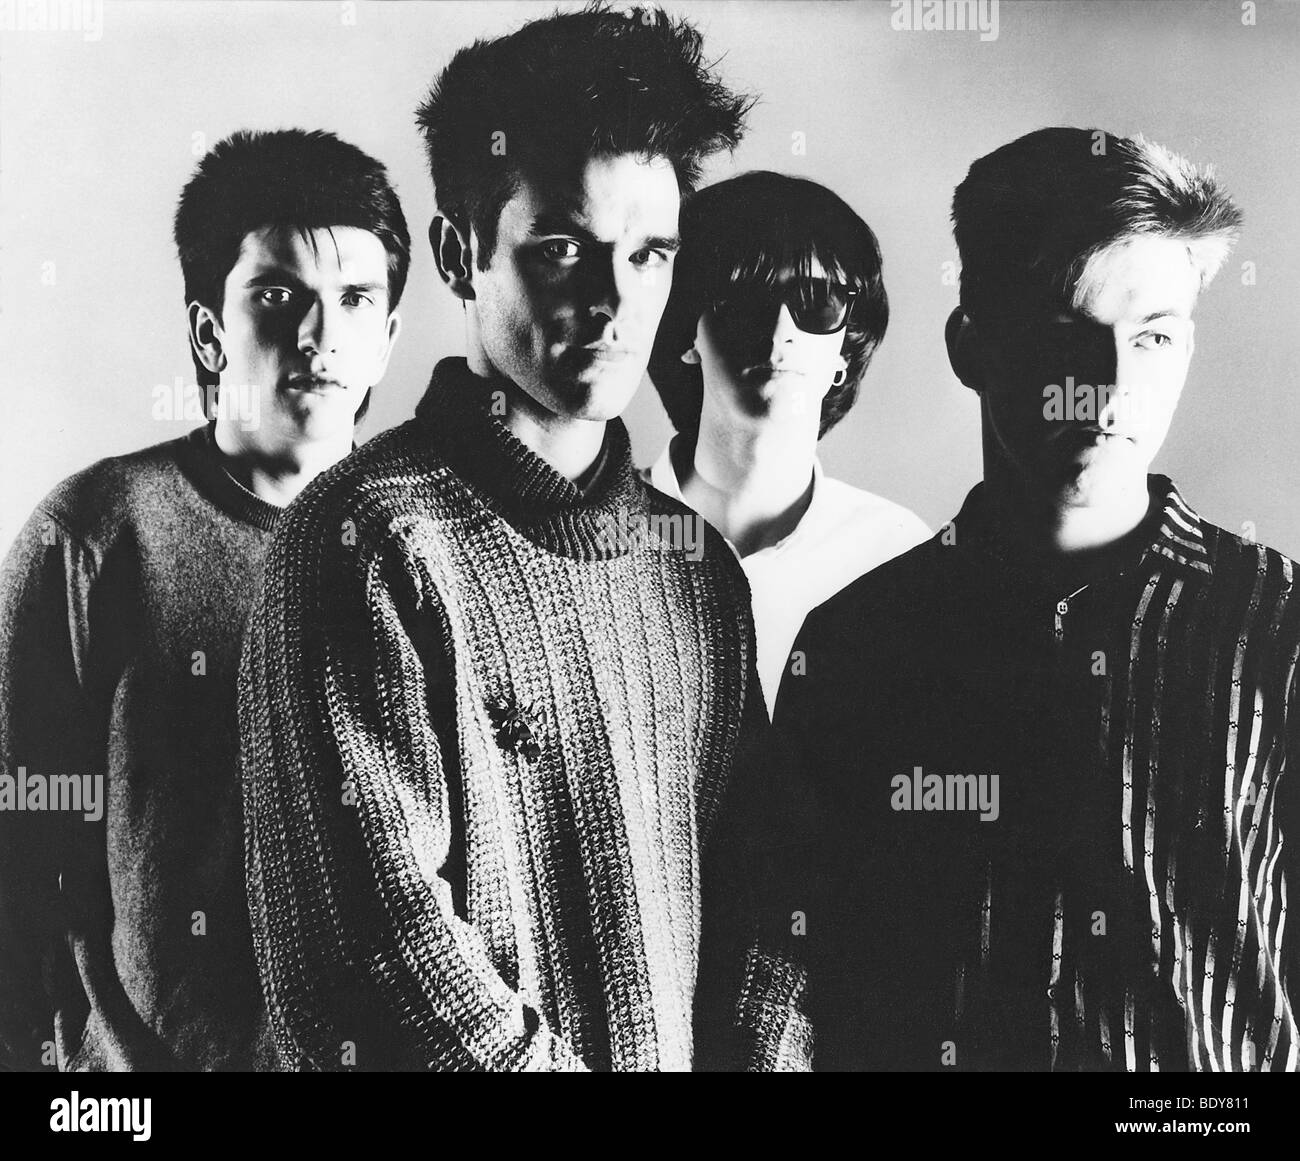 THE SMITHS - foto promozionale del Regno Unito gruppo pop circa 1985 con Stephen Morrisey secondo da sinistra Foto Stock